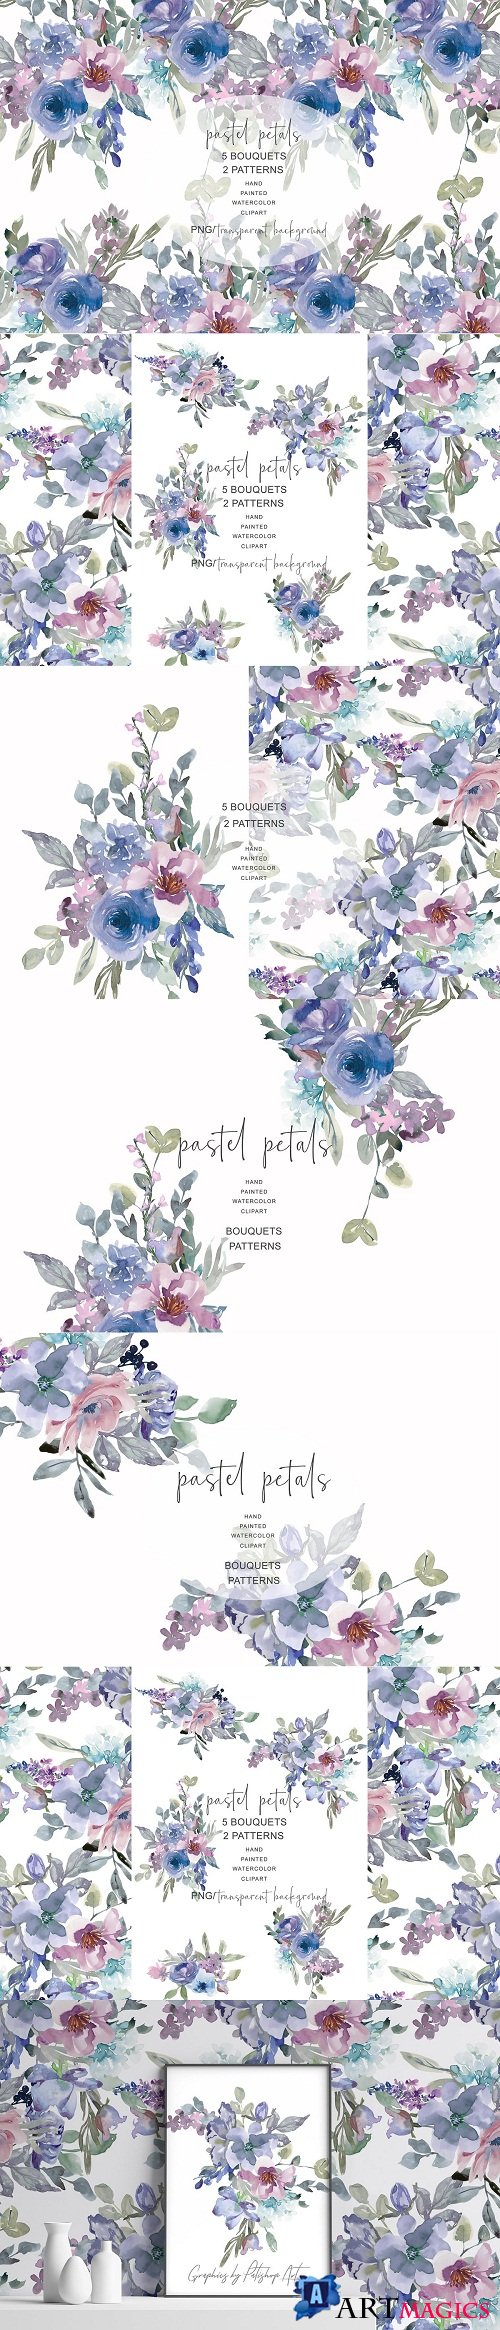 Watercolor Pastel Florals & Patterns - 3417793